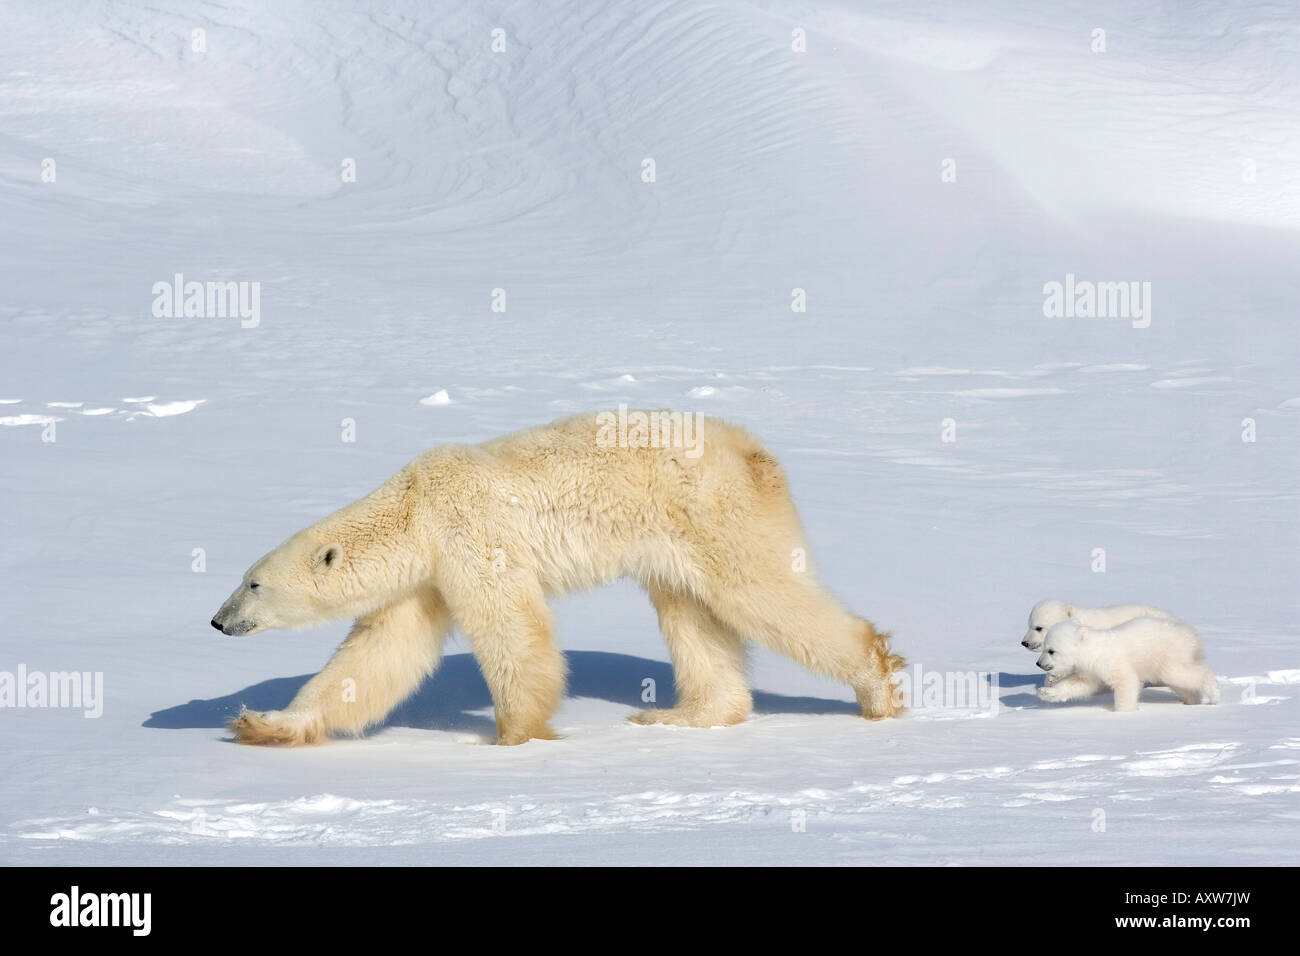 Orso polare (Ursus maritimus) madre con twin cubs, Wapusk National Park, Churchill, la Baia di Hudson, Manitoba, Canada, America del Nord Foto Stock